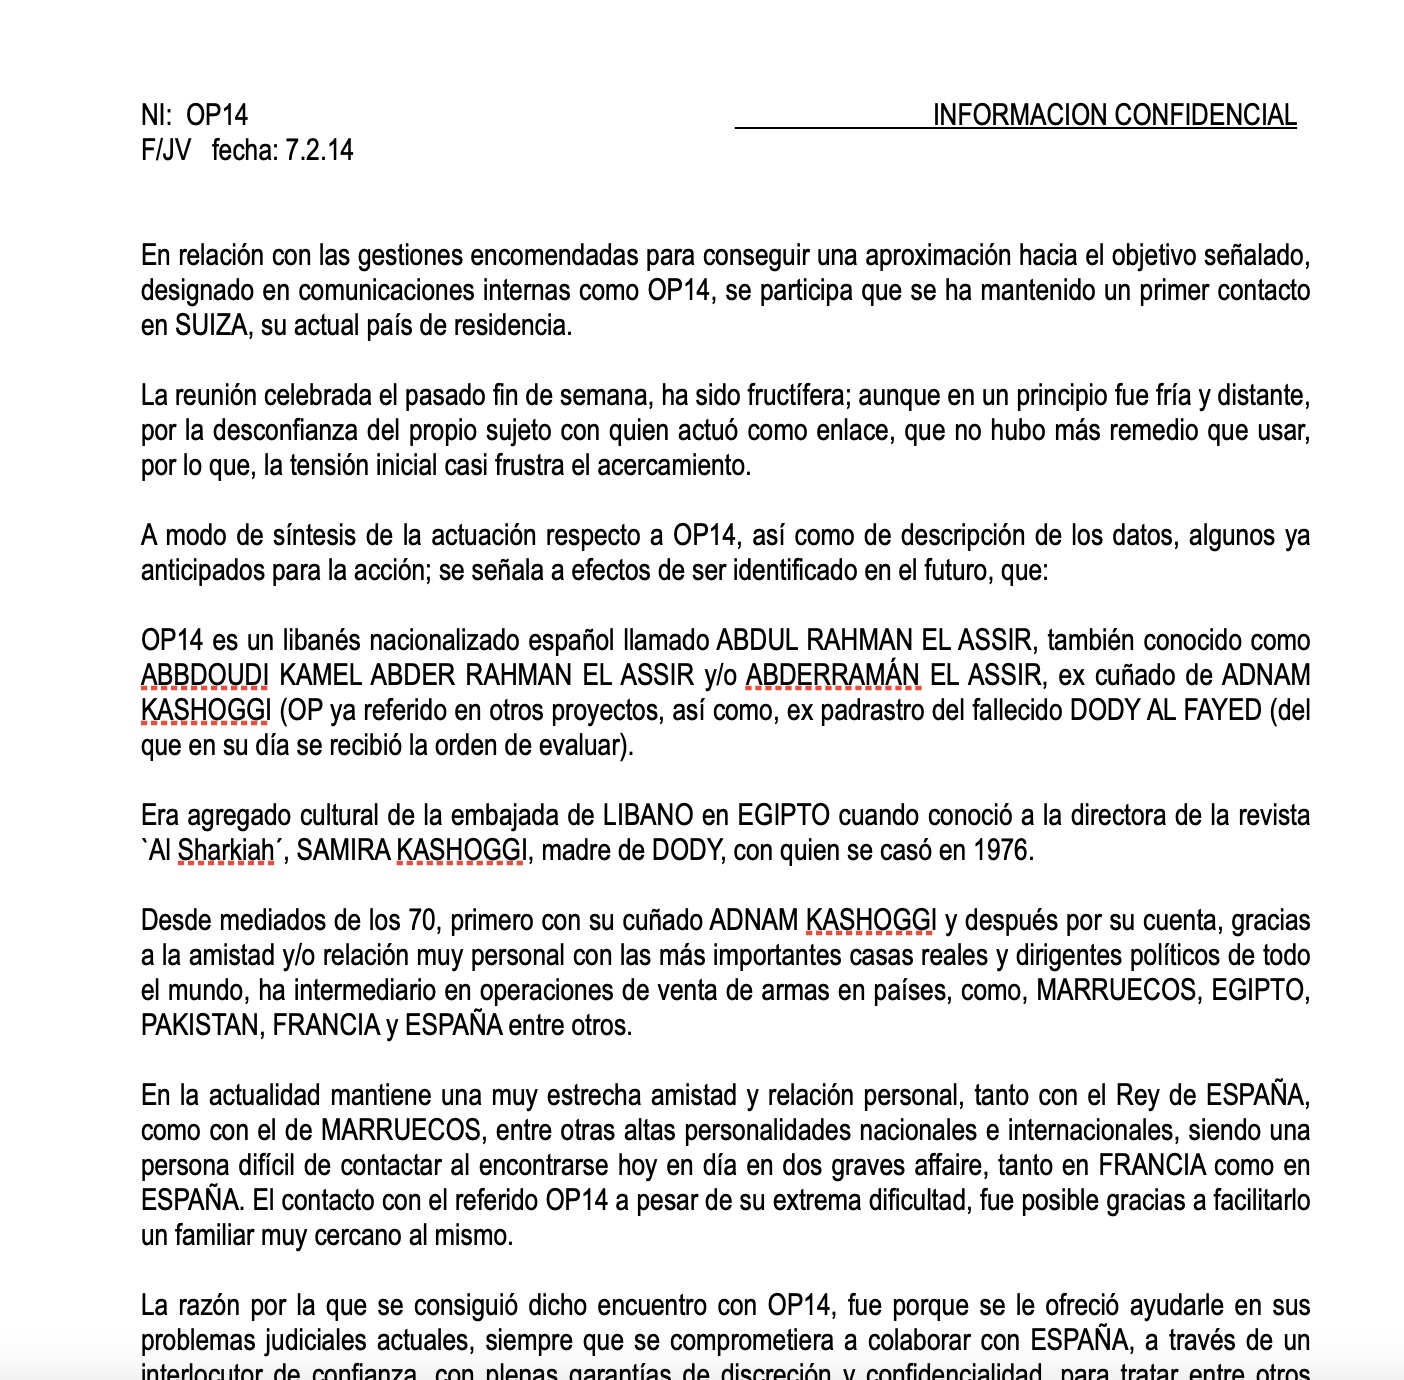 La primera nota d'intel·ligència de Vilalrejo després de la trobada amb Assir del 7 de febrer de 2014/Quico Sallés